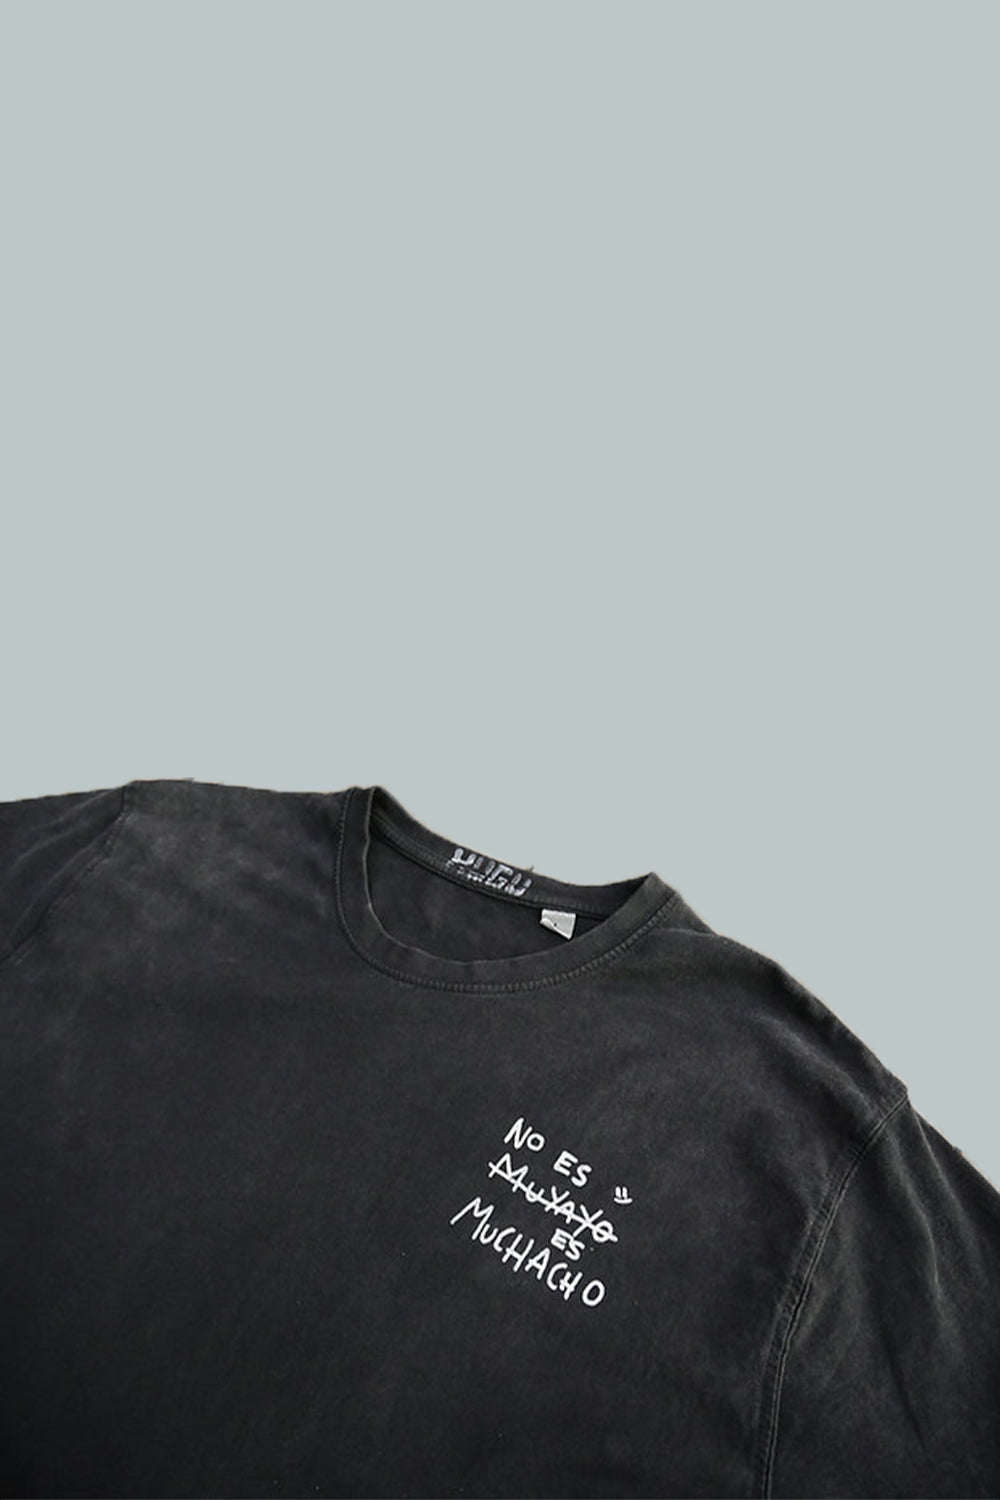 detalle del cuello de la camiseta muyayo en negro pizarra